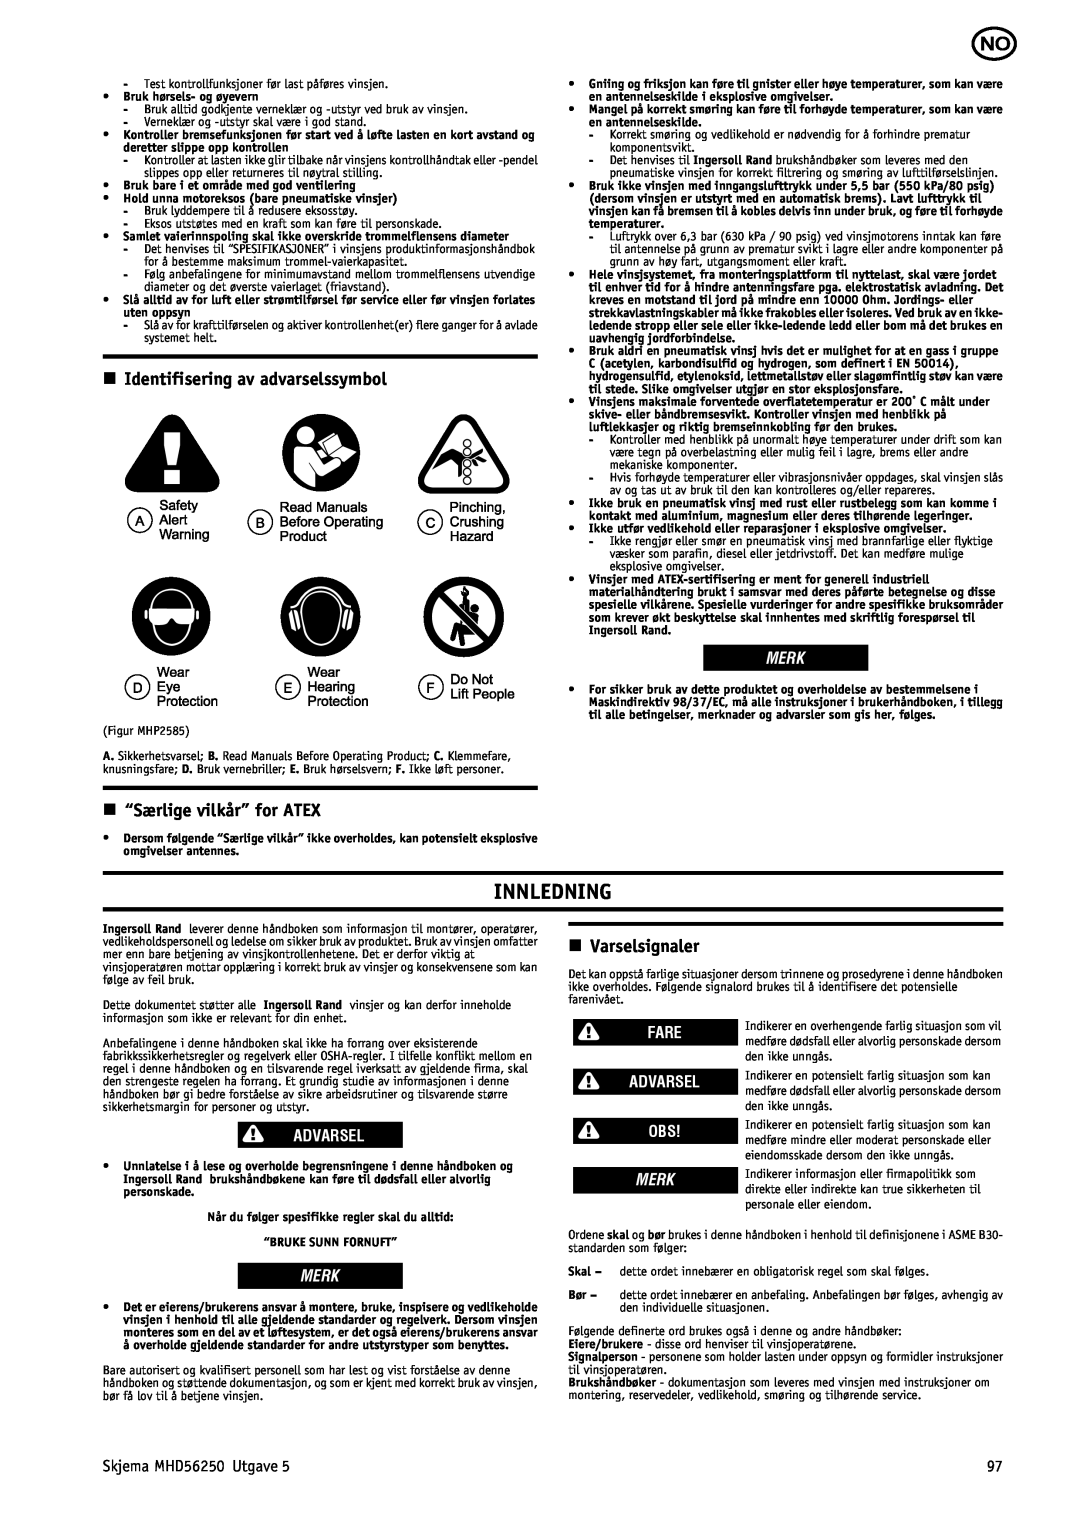 Ingersoll-Rand MHD56250 Innledning, n Identifisering av advarselssymbol, n “Særlige vilkår” for ATEX, n Varselsignaler 